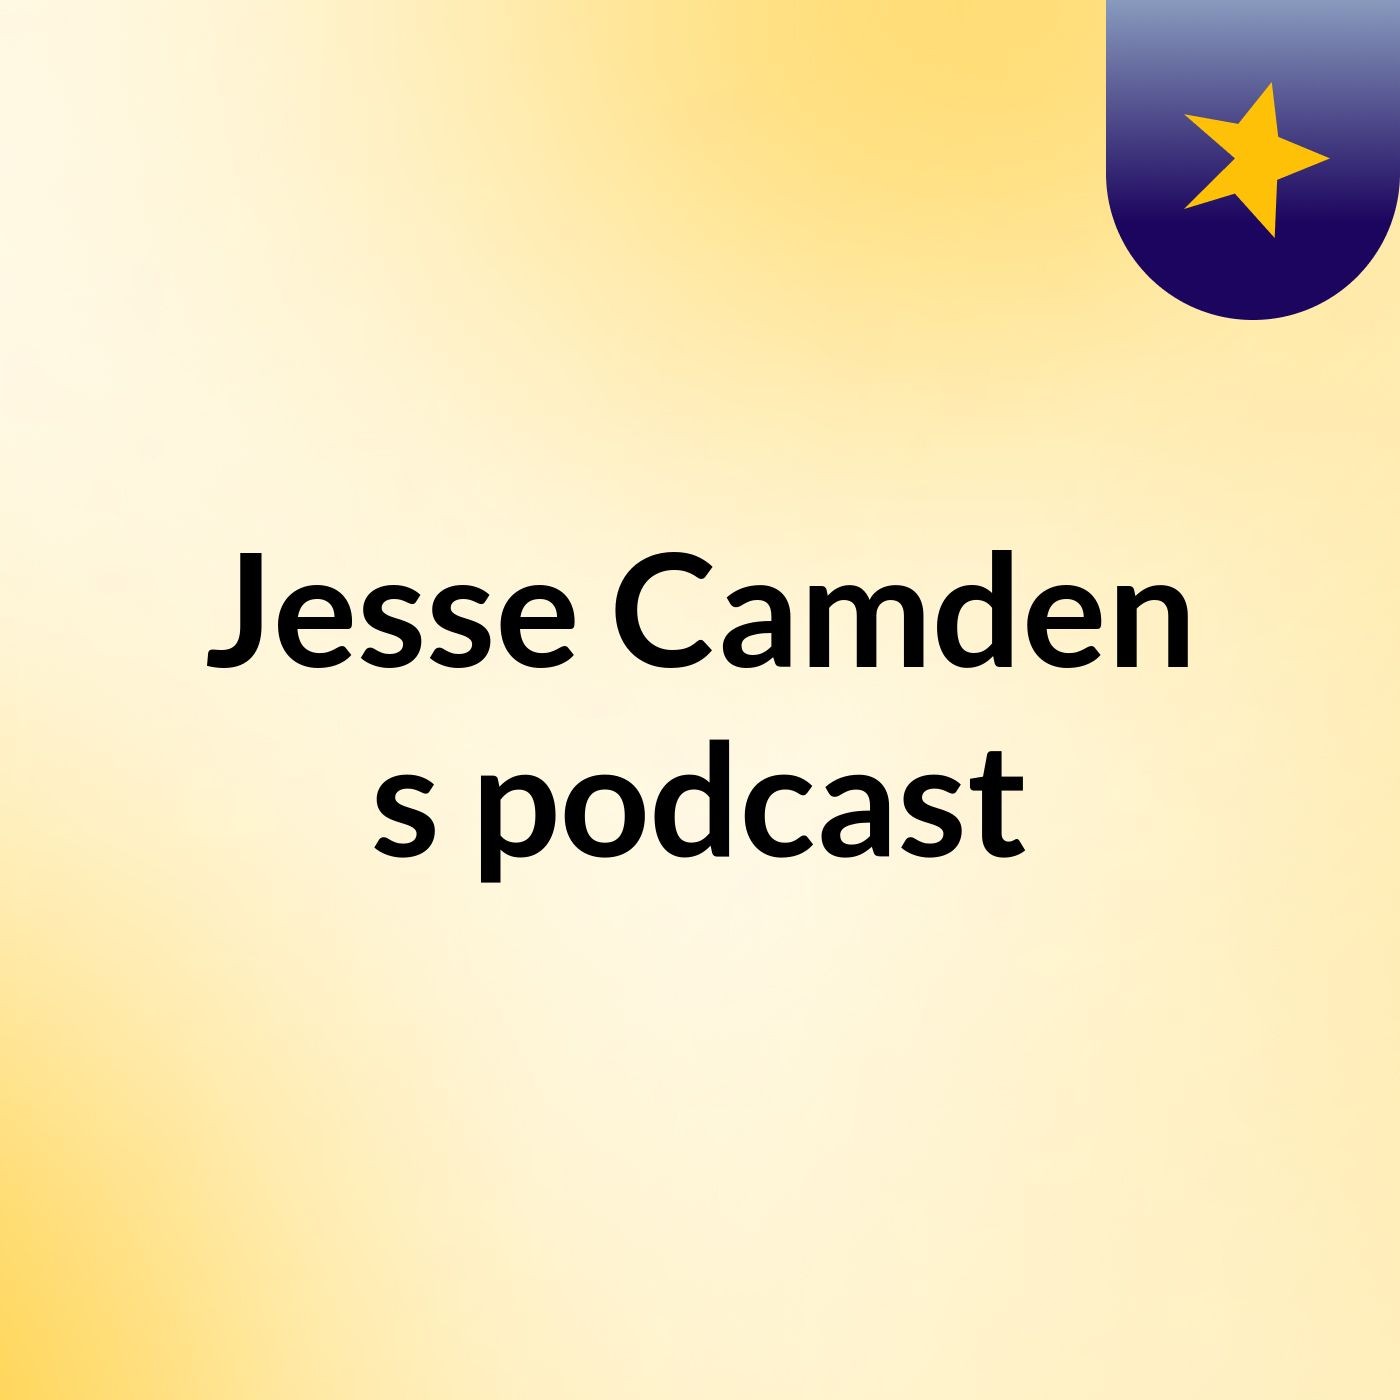 Jesse Camden's podcast